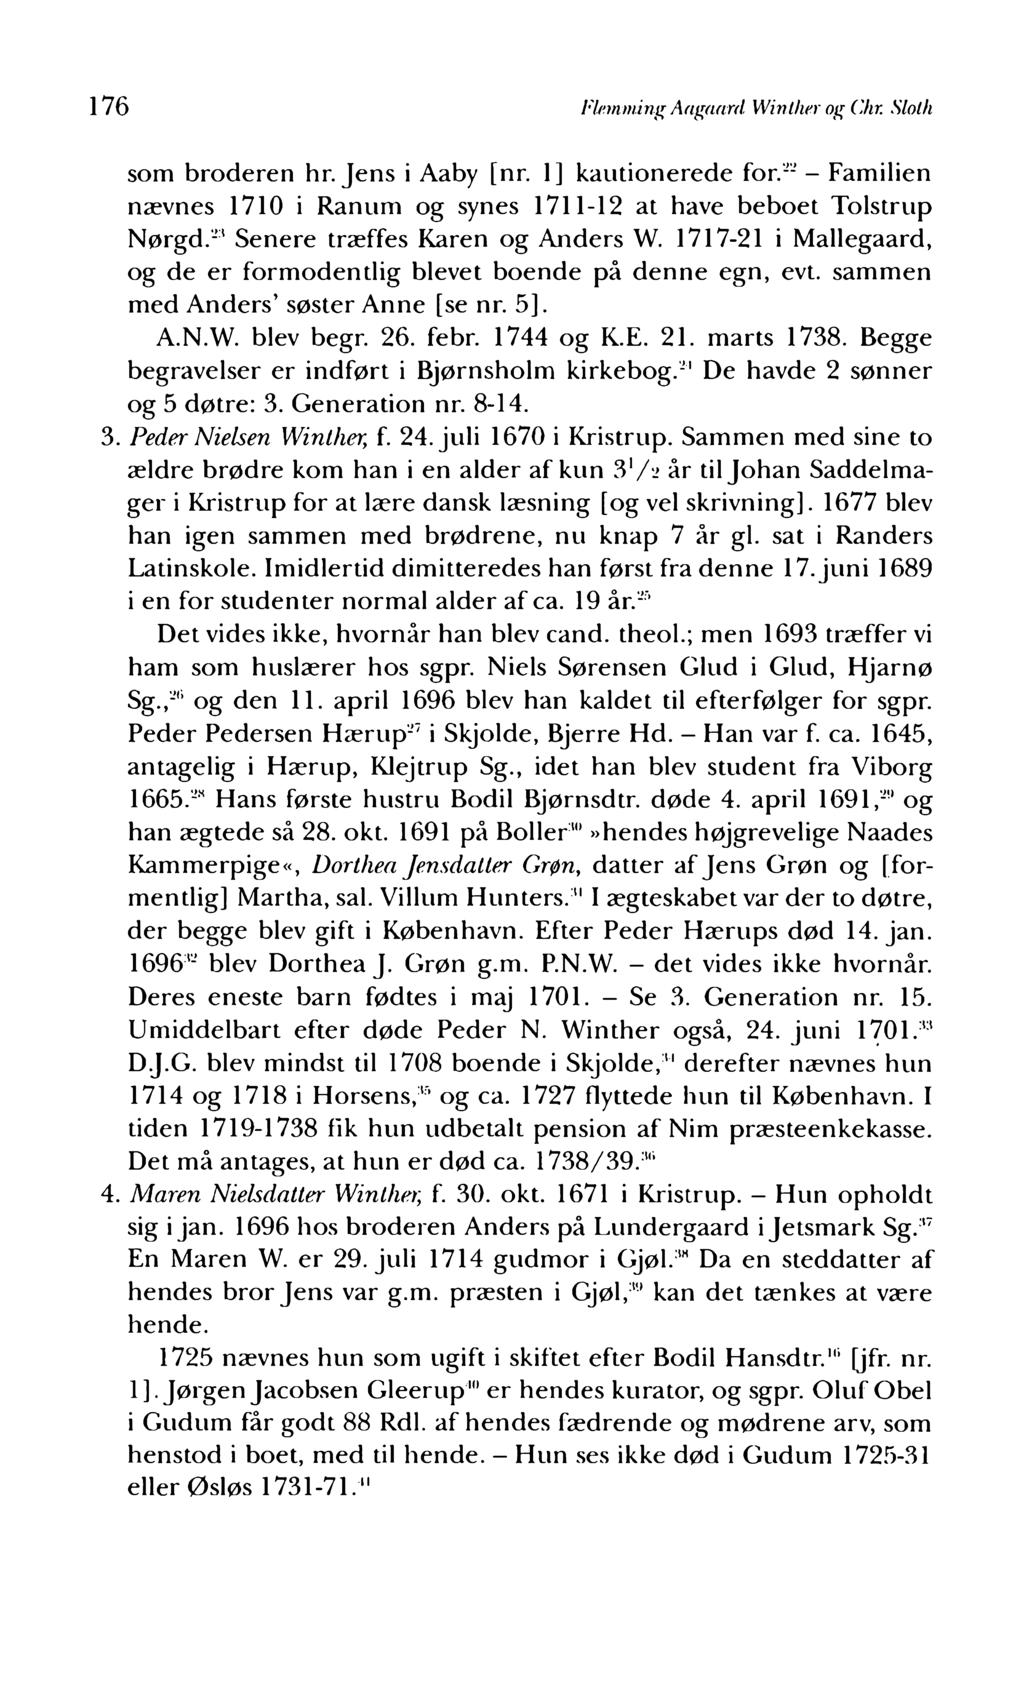 176 Flemming Aagaard Winther og Chr. Sloth som broderen hr. Jens i Aaby [nr. 1] kautionerede for.22 - Familien nævnes 1710 i Ranum og synes 1711-12 at have beboet Tolstrup Nørgd.